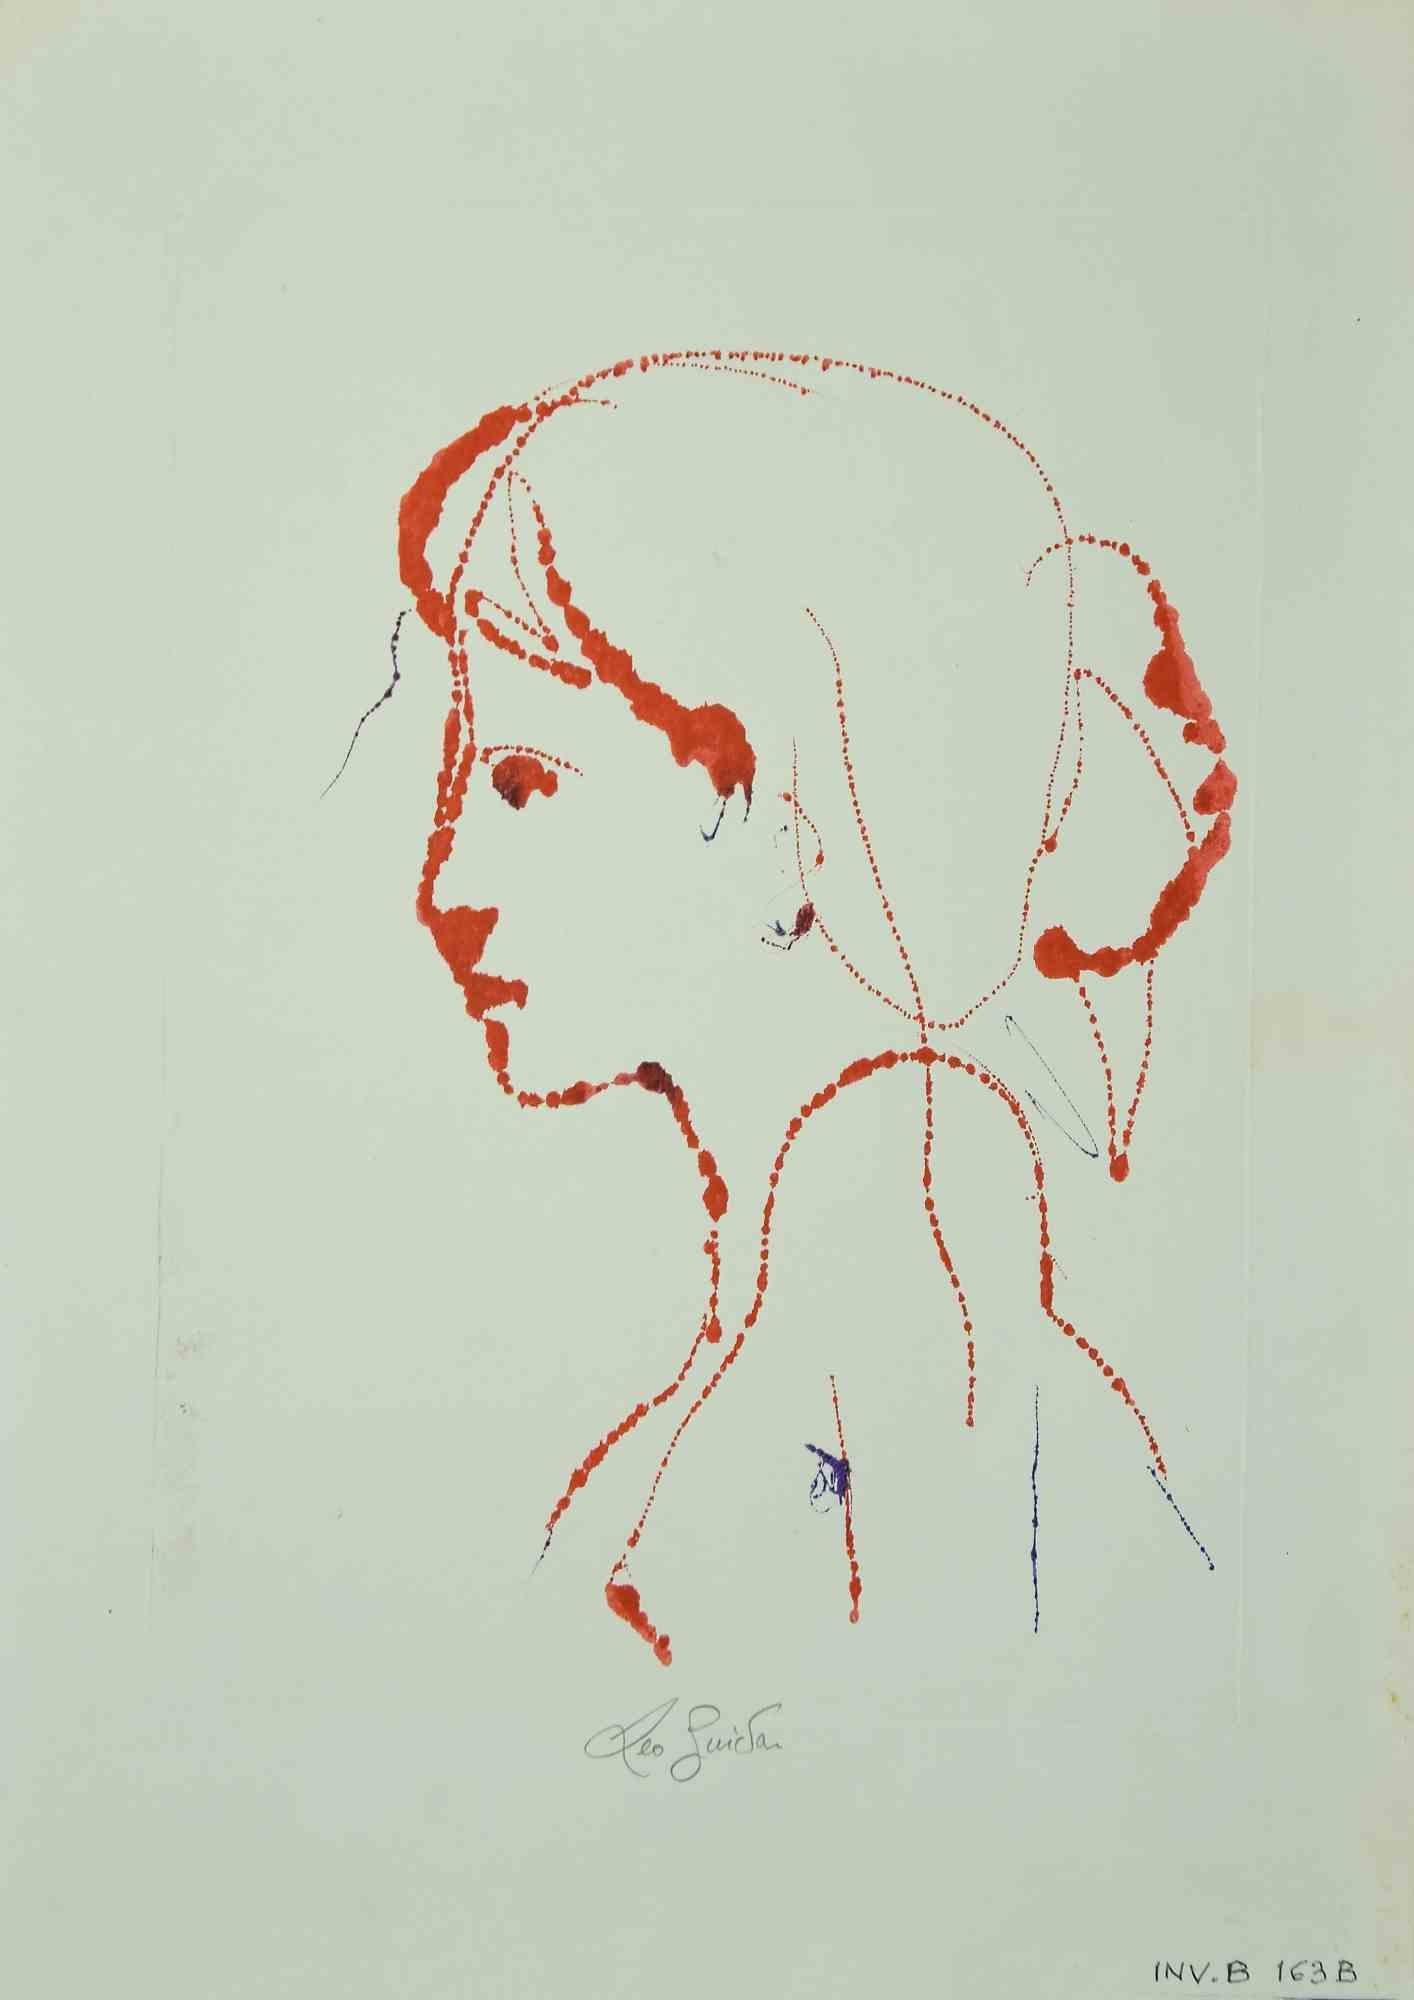 Das Porträt ist ein originales Kunstwerk.  1970 von dem italienischen zeitgenössischen Künstler  Leo Guida  (1992 - 2017).

Original-Aquarellzeichnung auf elfenbeinfarbenem Papier.

An den unteren Rändern handsigniert. 

Ausgezeichnete Bedingungen.